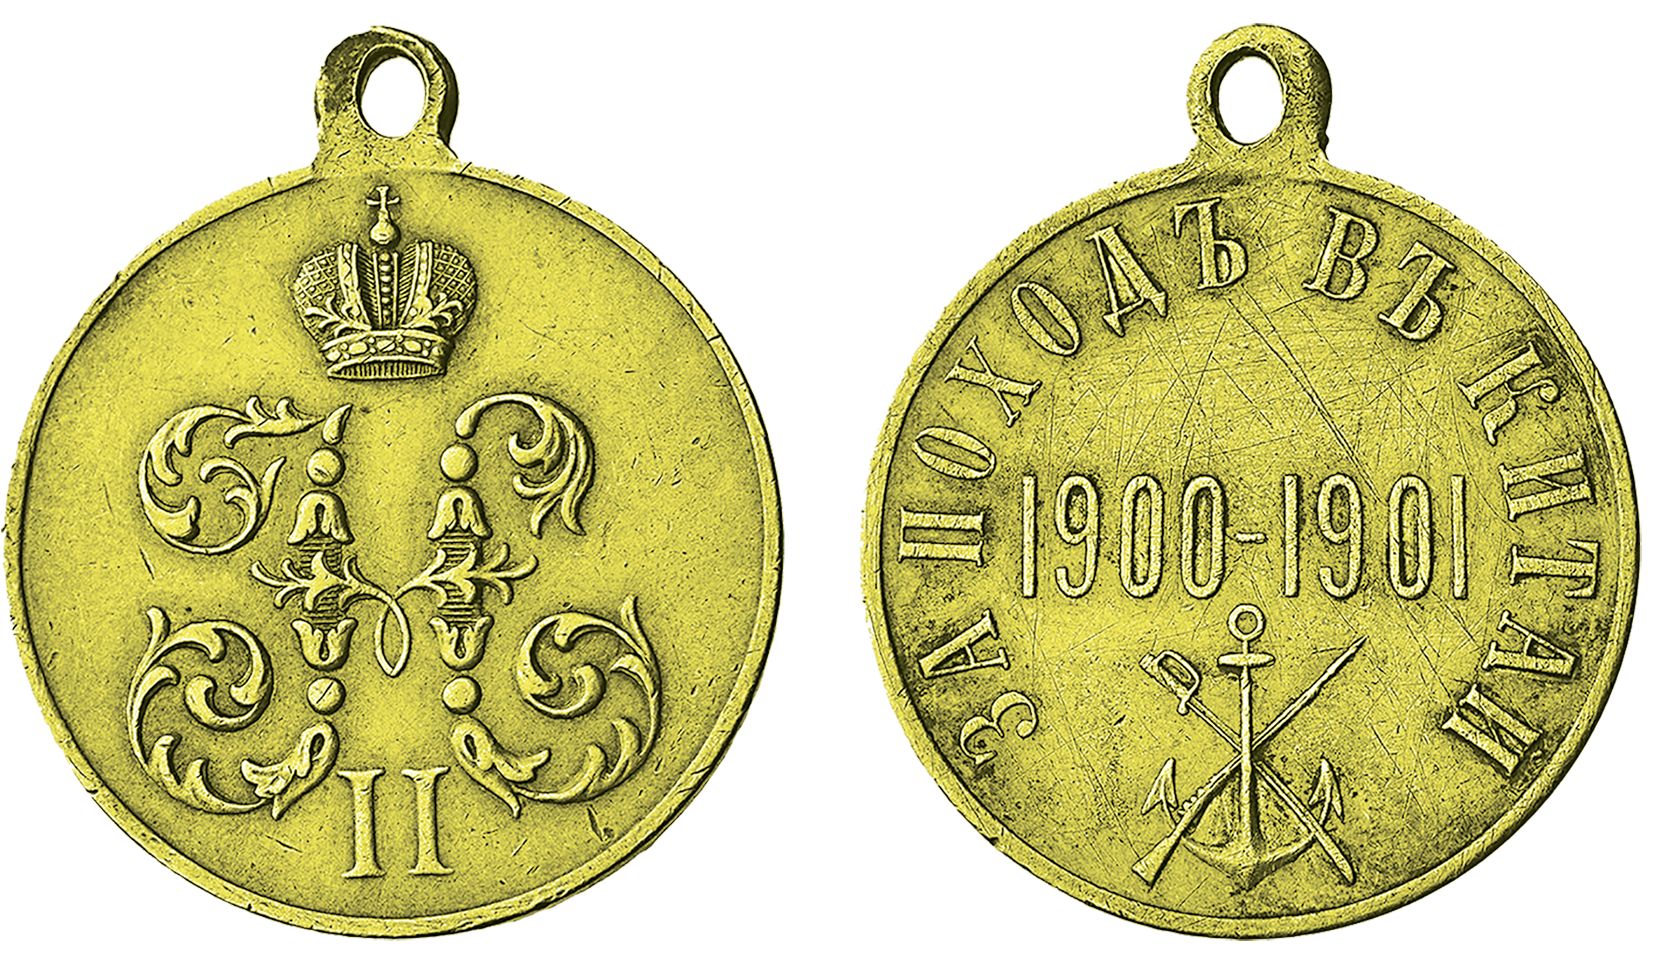 Наградная медаль «За поход в Китай. 1900-1901»